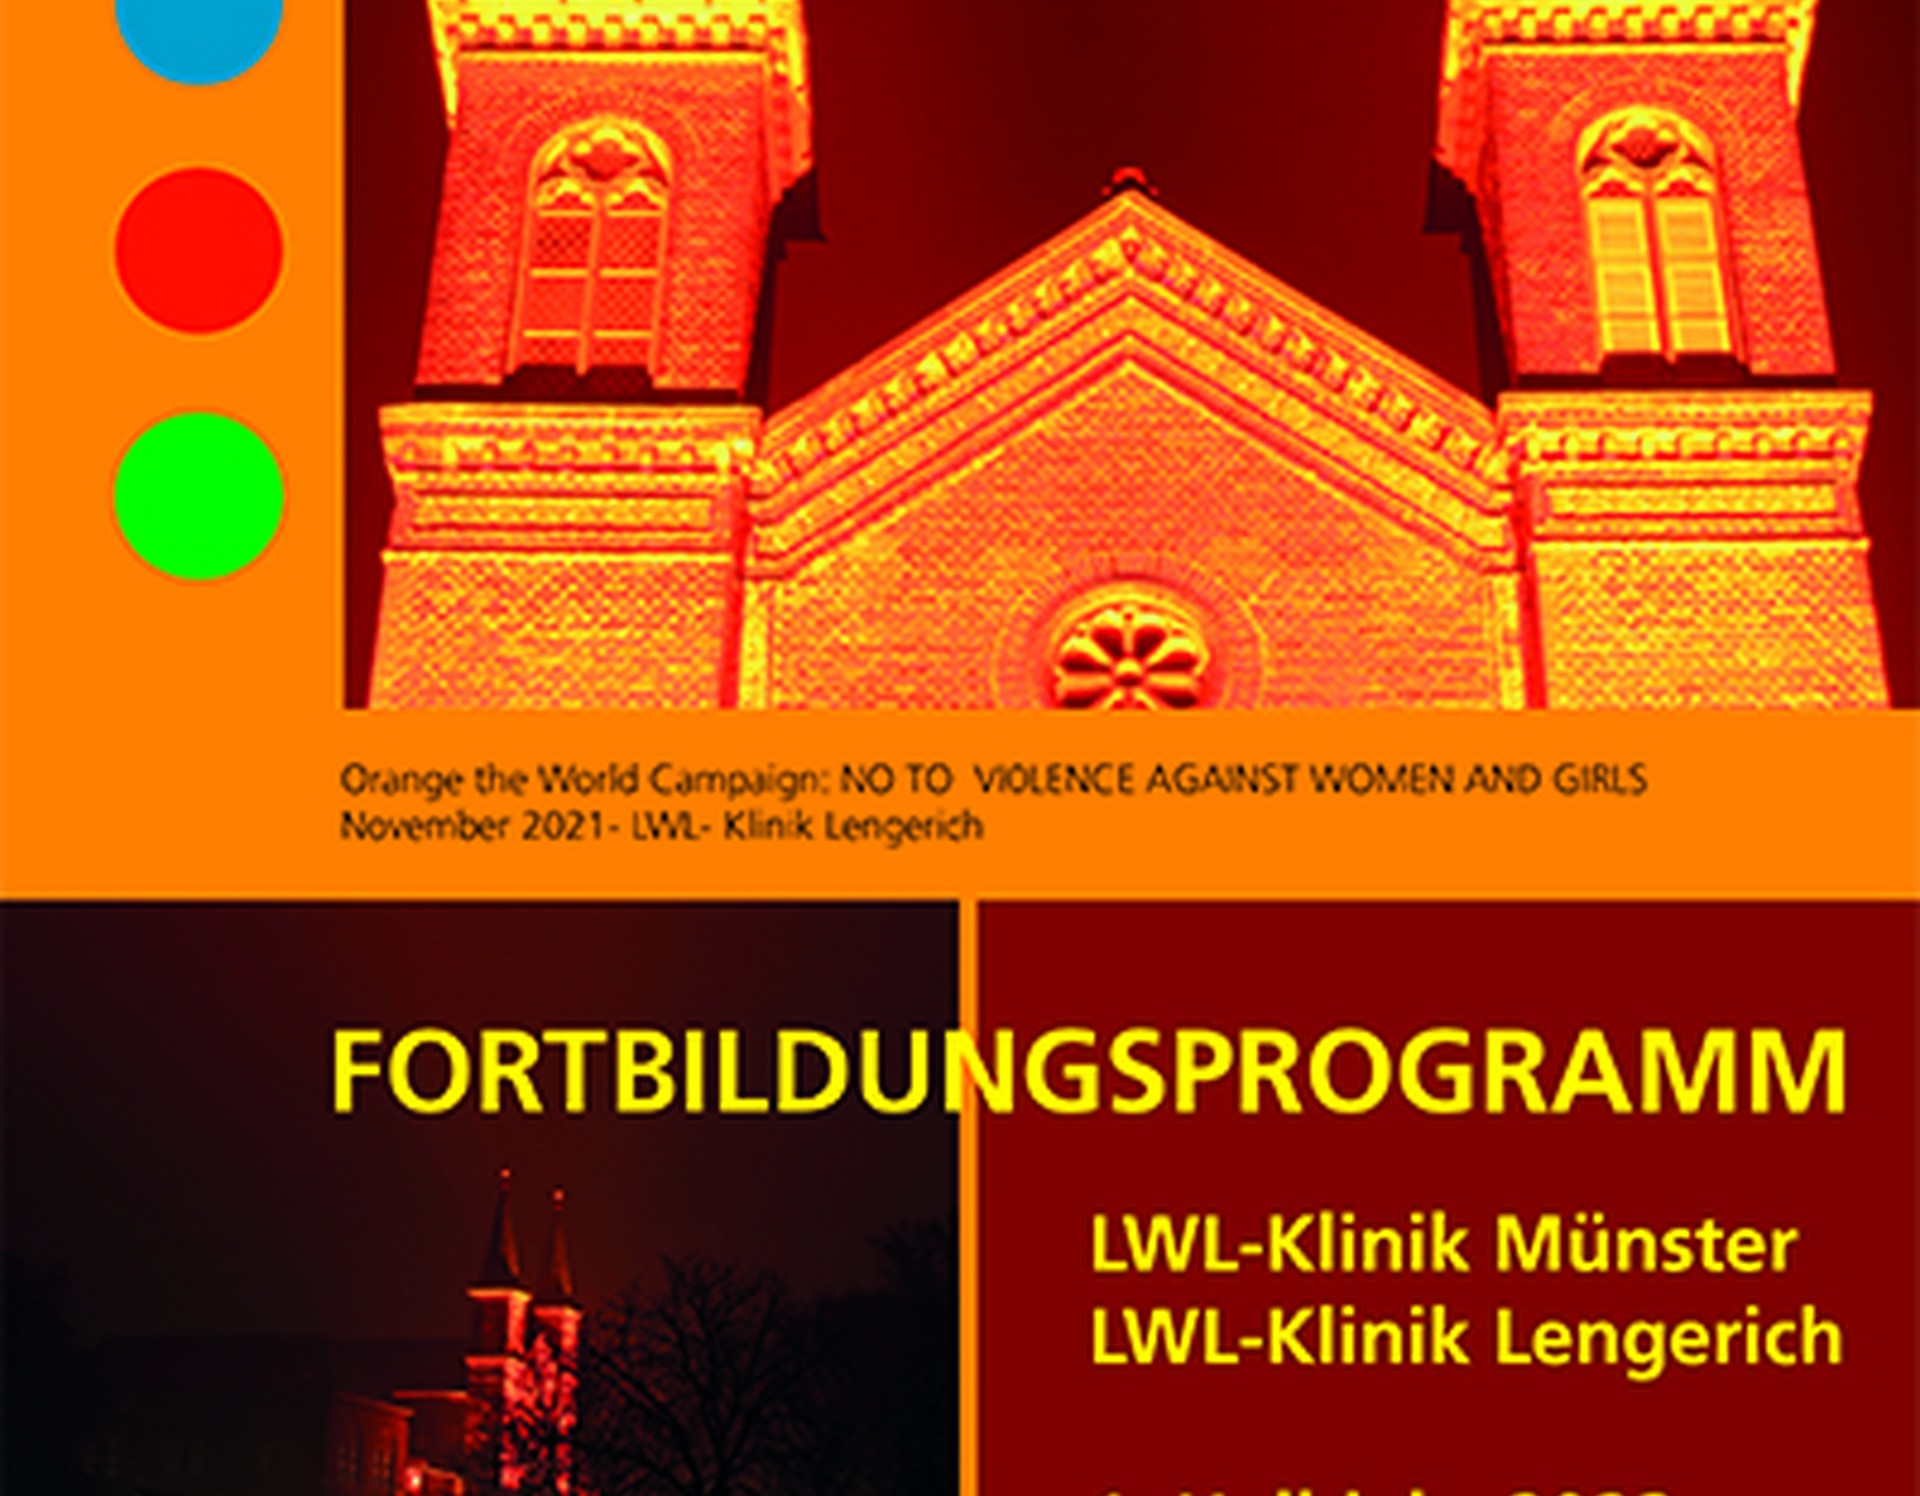 Die Titelseite des Fortbildungsprogramms zeigt das organge beleuchtete Portal mit den beiden Türmen der LWL-Klinik Lengerich